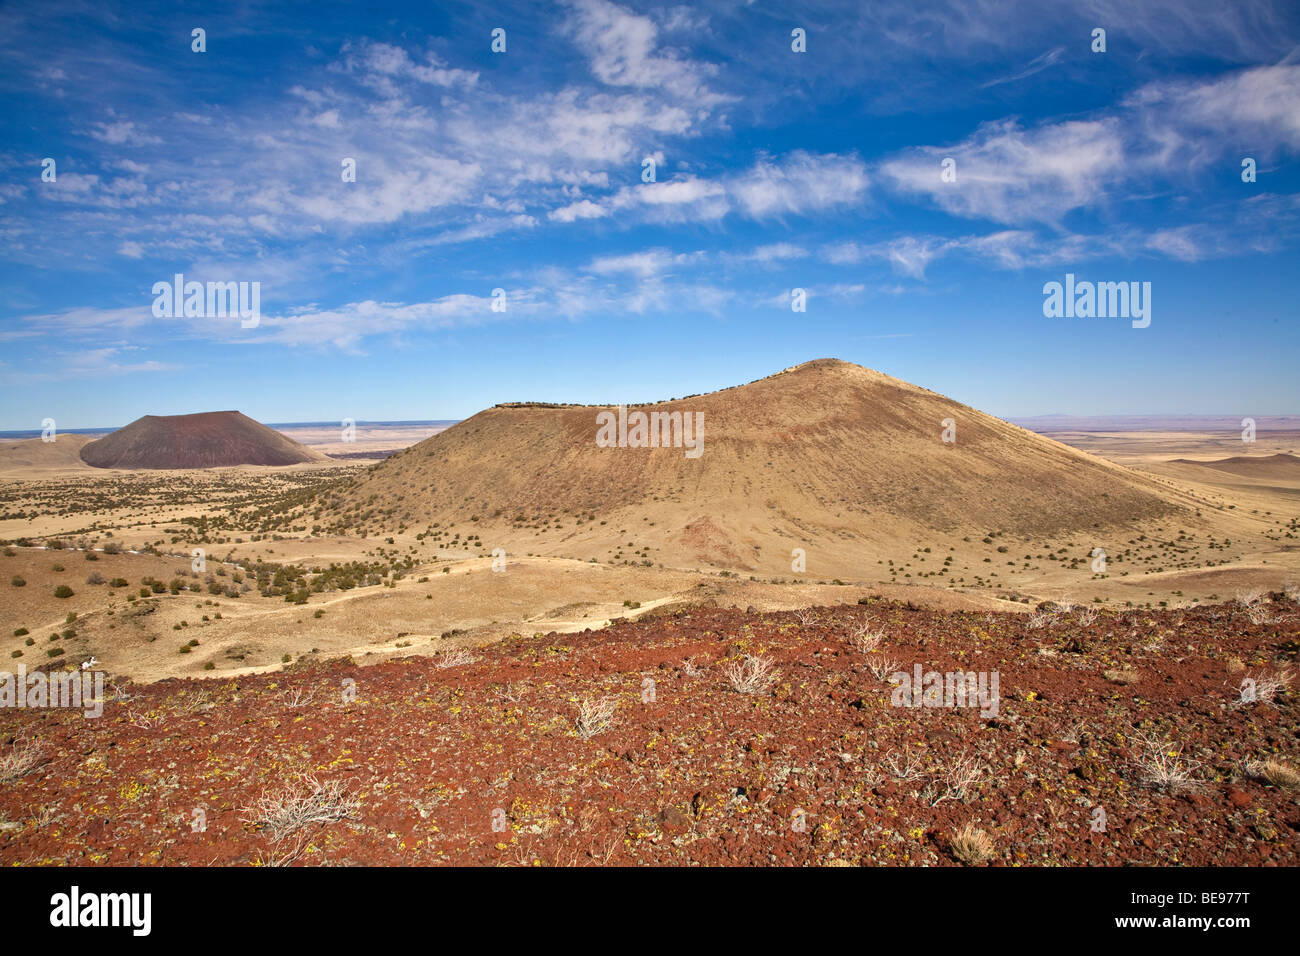 Vulkanischer Schlackenkegel San Francisco Vulkanfeldes, Blick vom Red Hill mit SP-Krater auf der linken Seite, in der Nähe von Flagstaff, Arizona USA Stockfoto